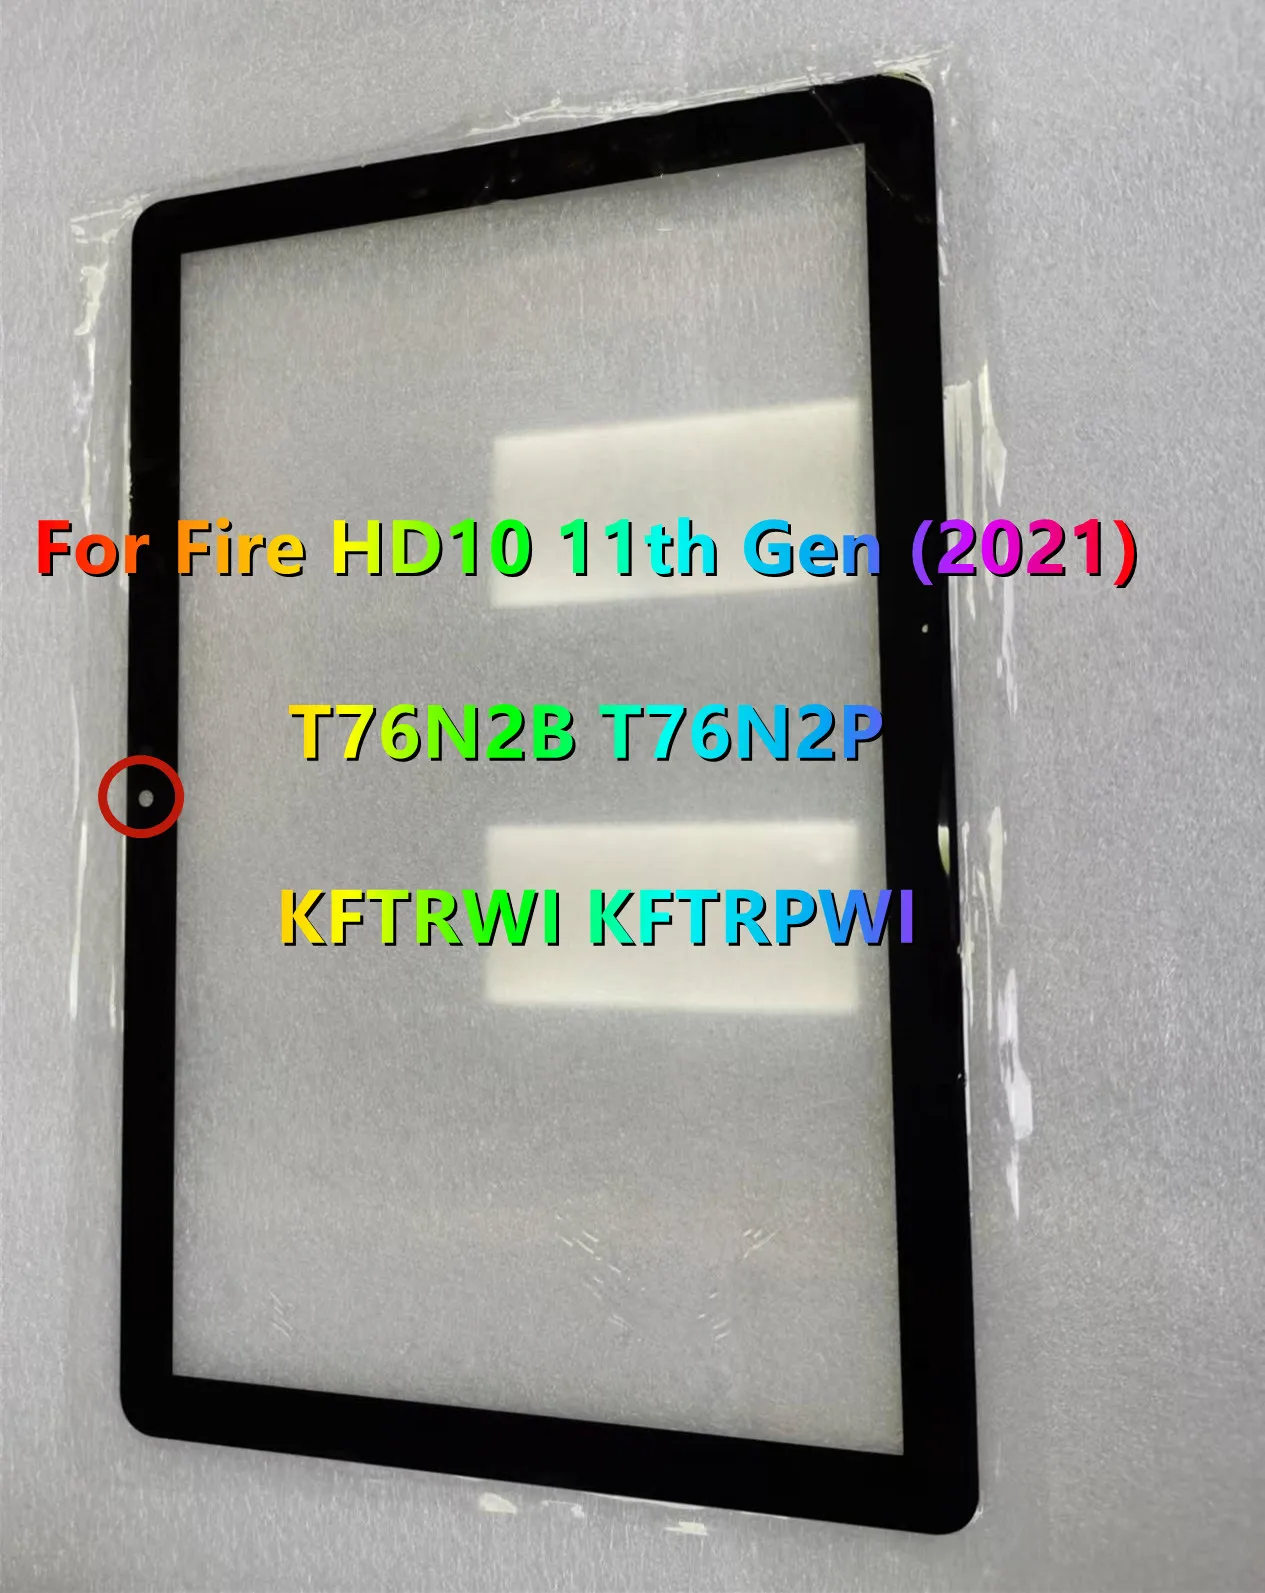 Novo para Amazon Fire HD 10 (2021) 11ª Geração T76N2B T76N2P KFTRWI KFTRPWI Tela sensível ao toque de vidro frontal LCD Painel externo + OCA laminado